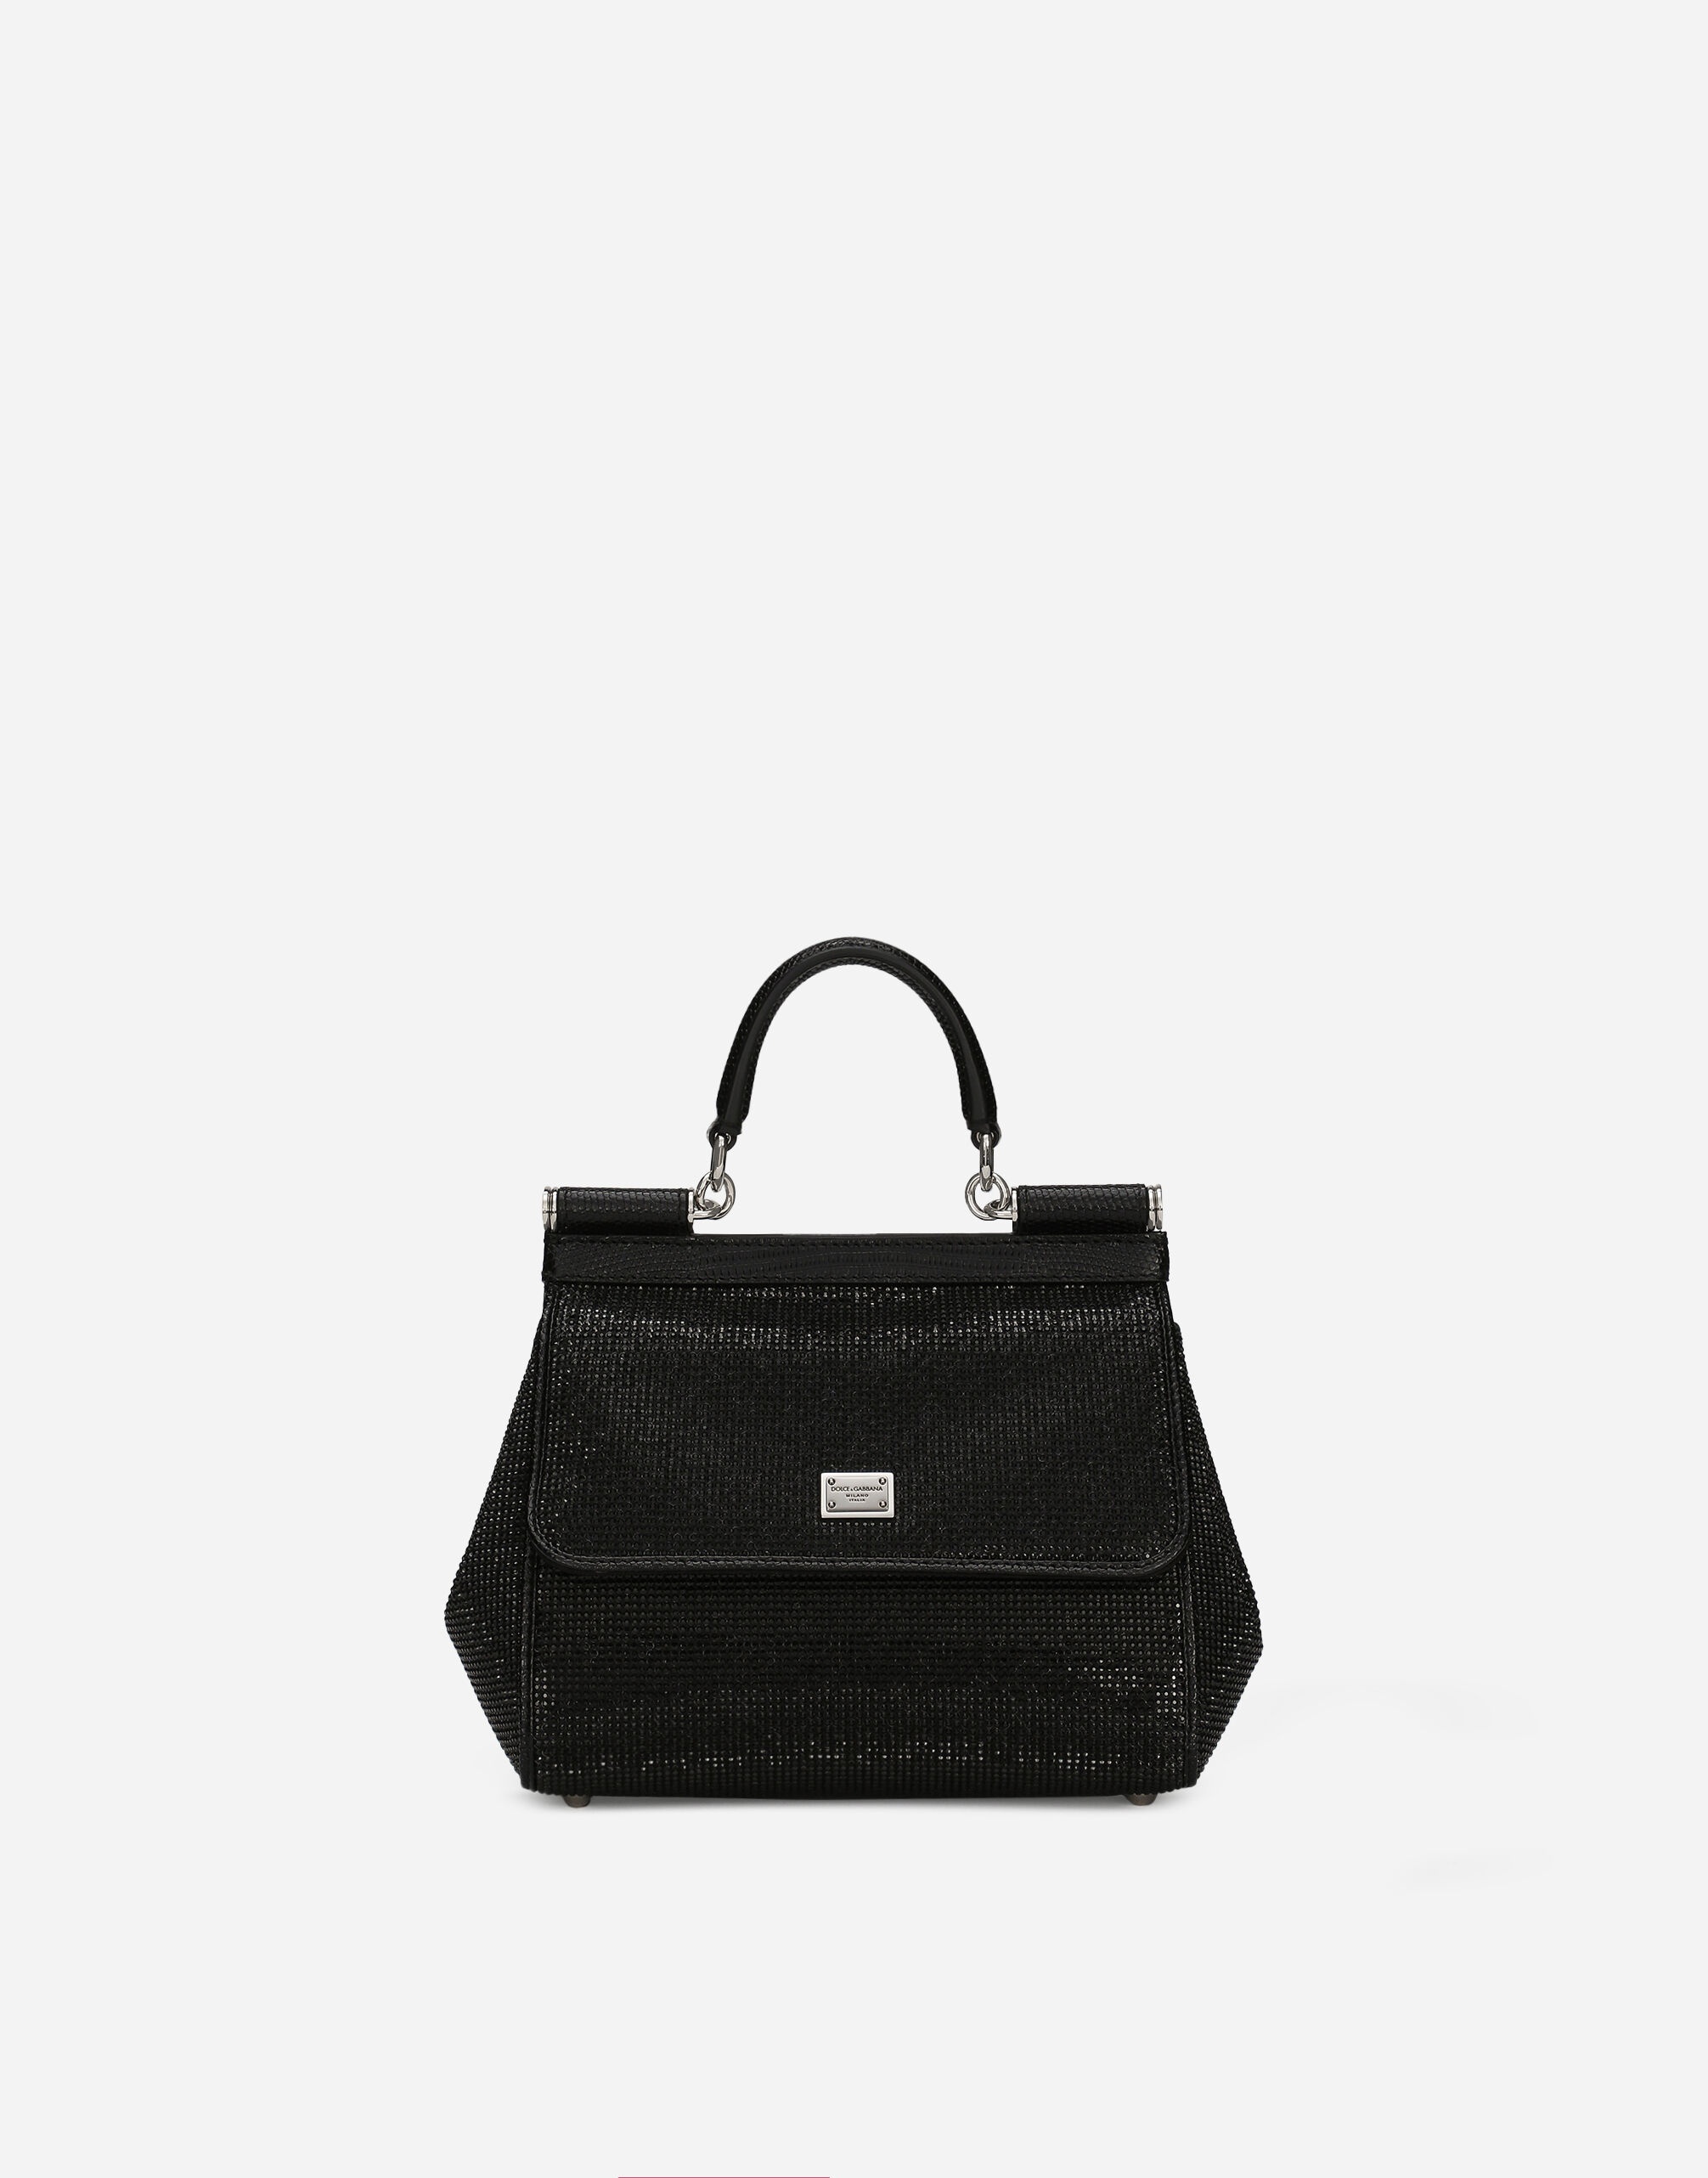 Medium Sicily handbag - 1